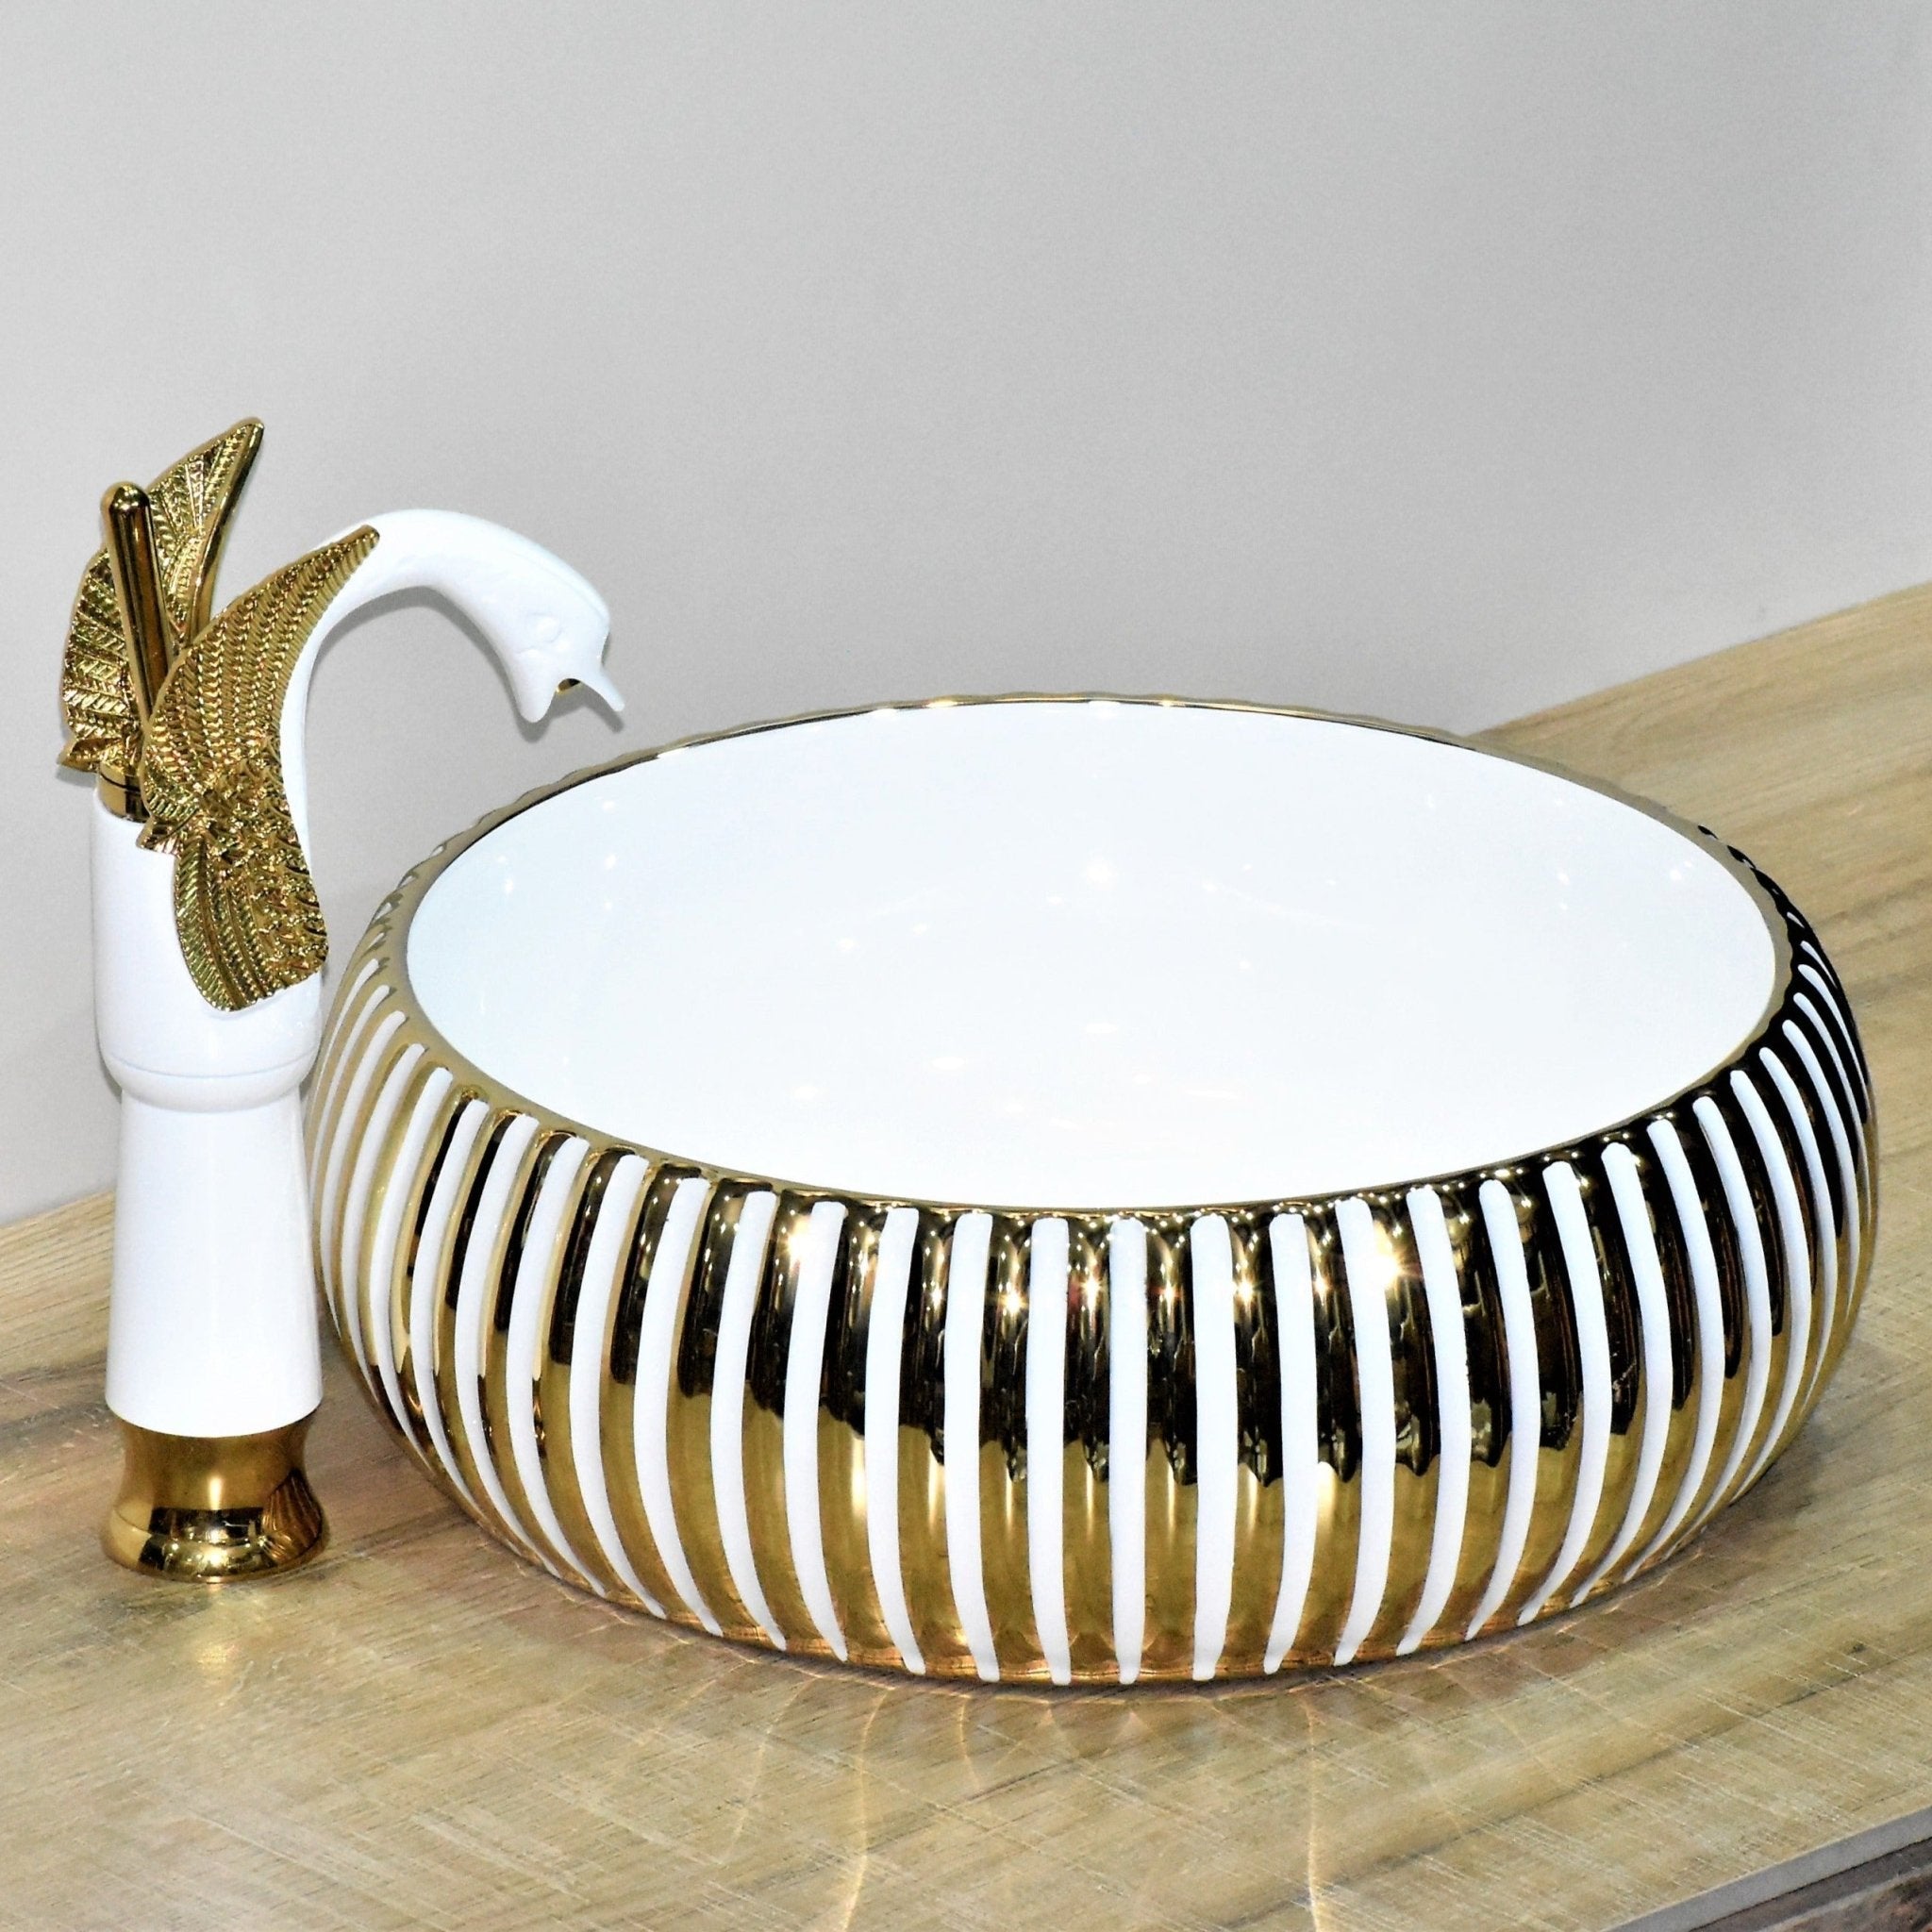 InArt Round Bathroom Ceramic Vessel Sink Art Basin in Gold White Color - InArt-Studio-USA